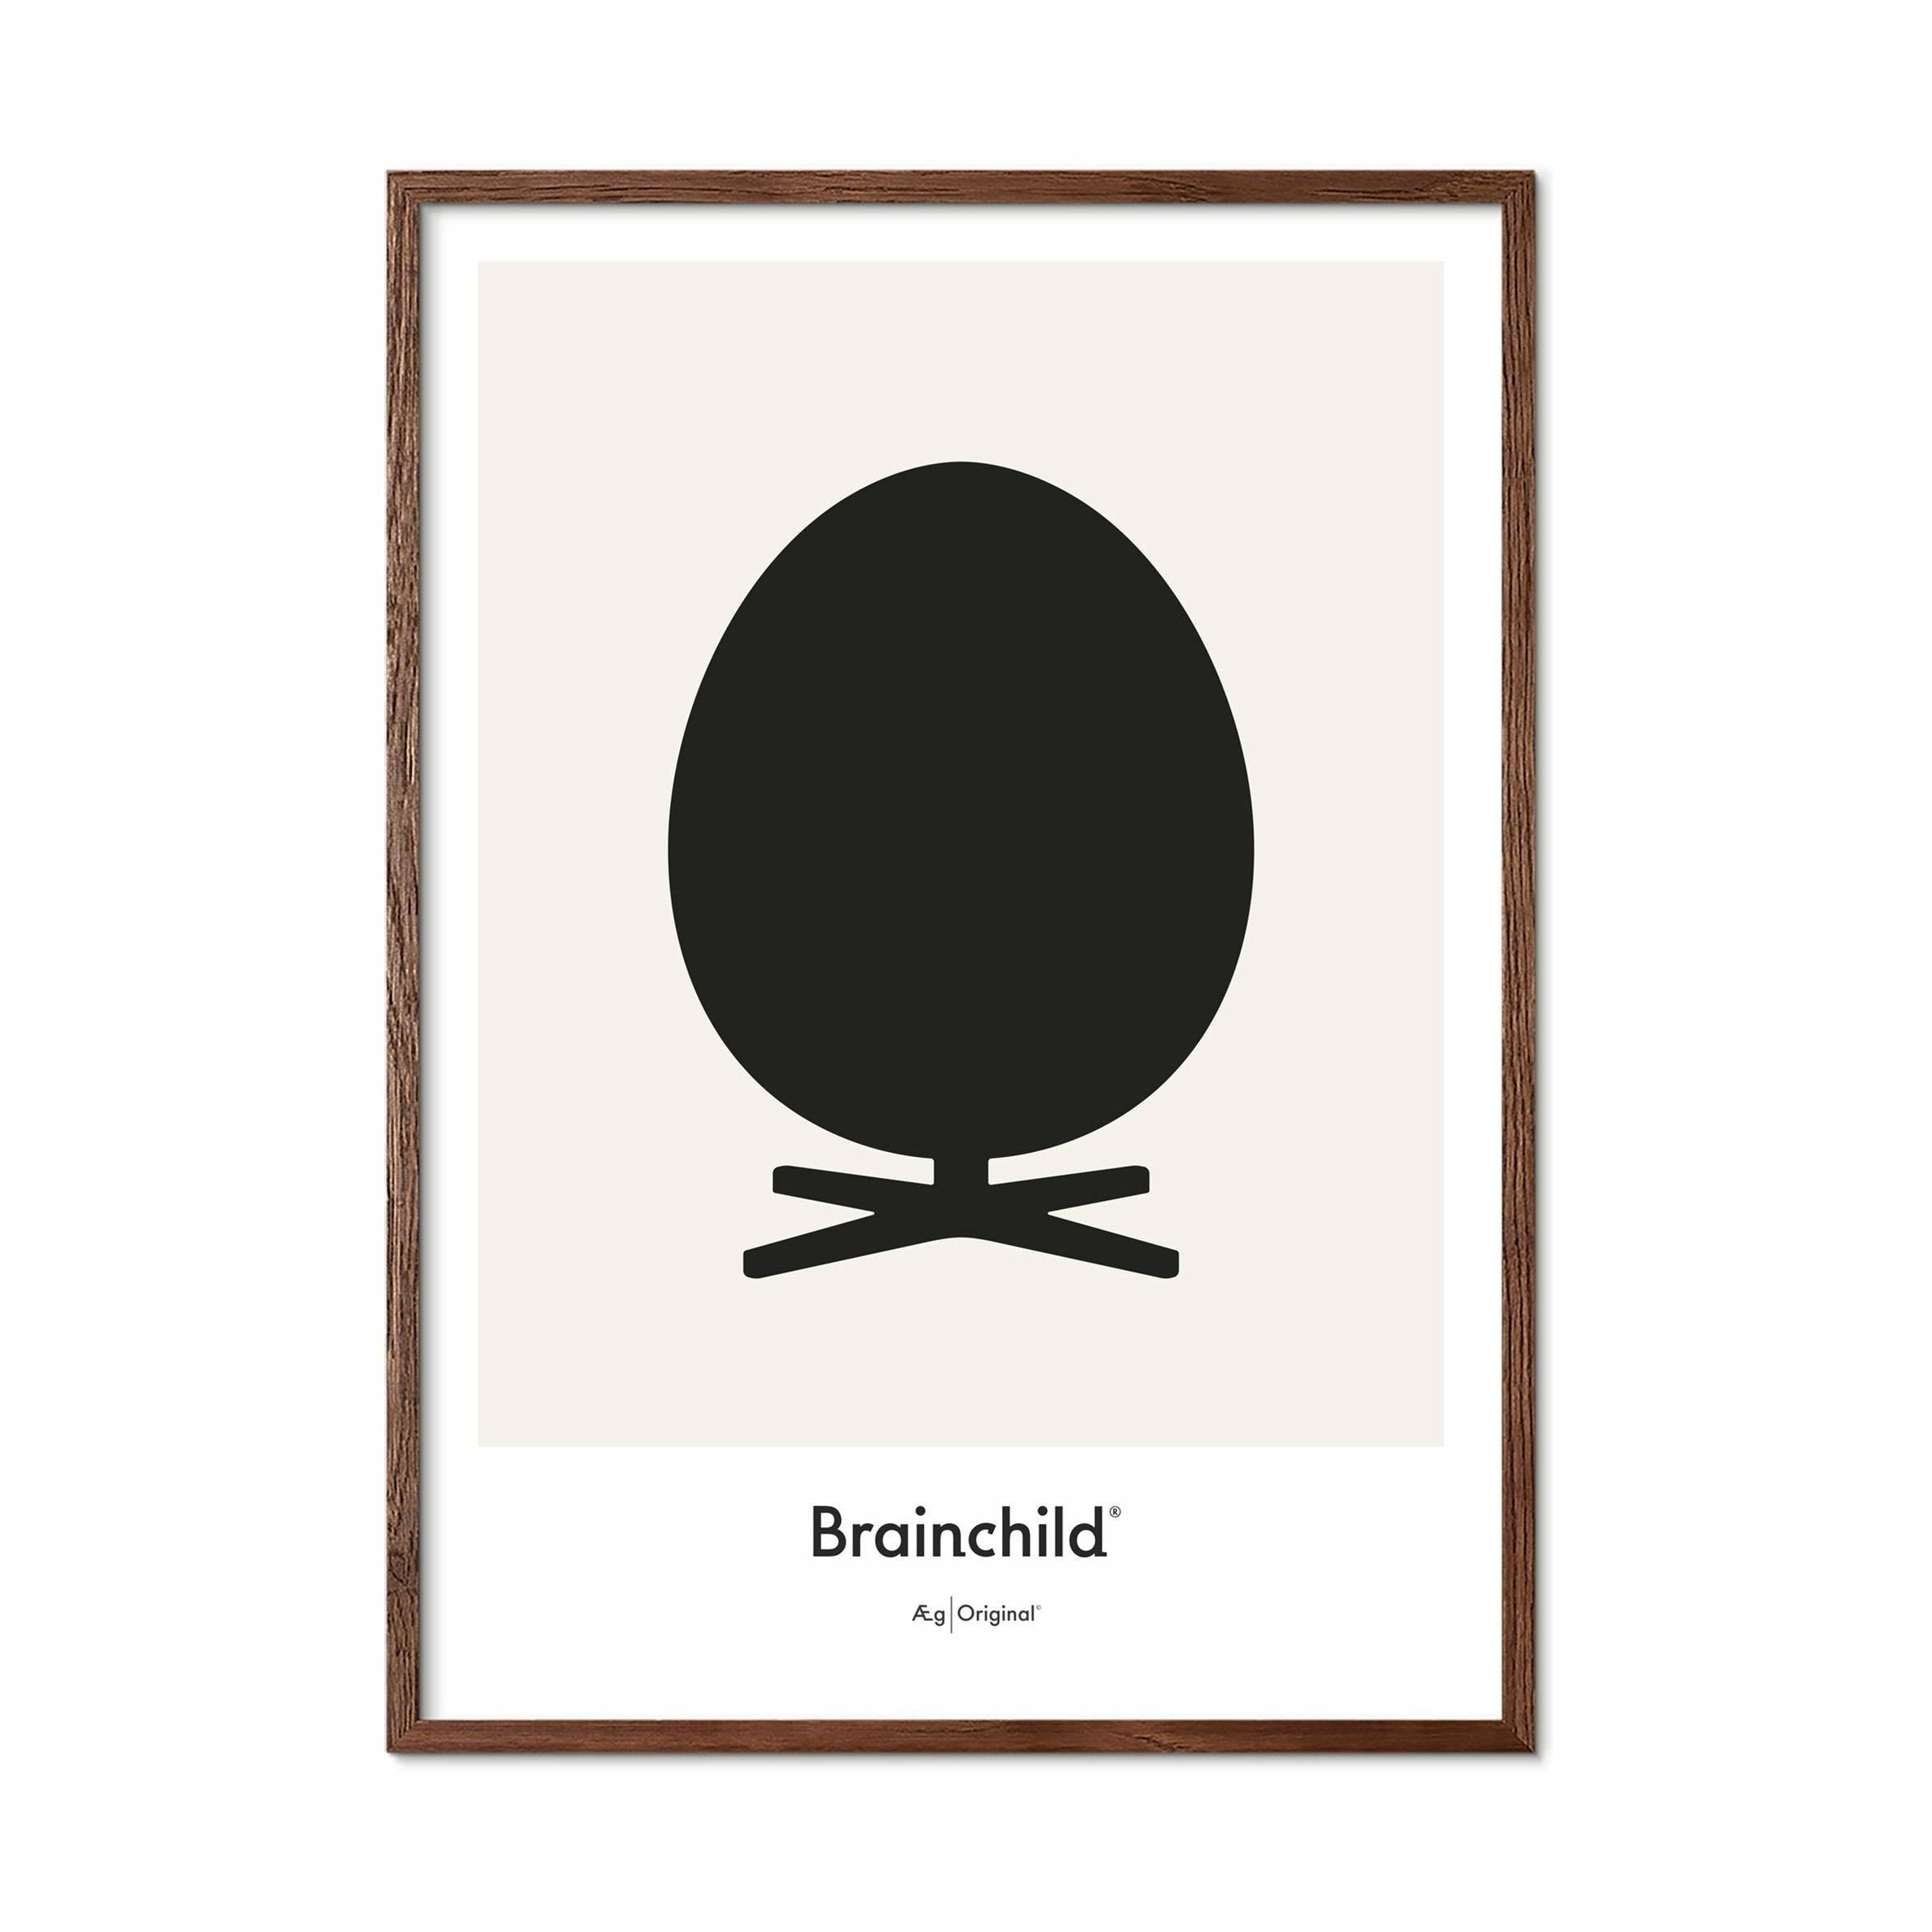 Brainchild Ægdesignikonplakat, mørk træ ramme A5, grå